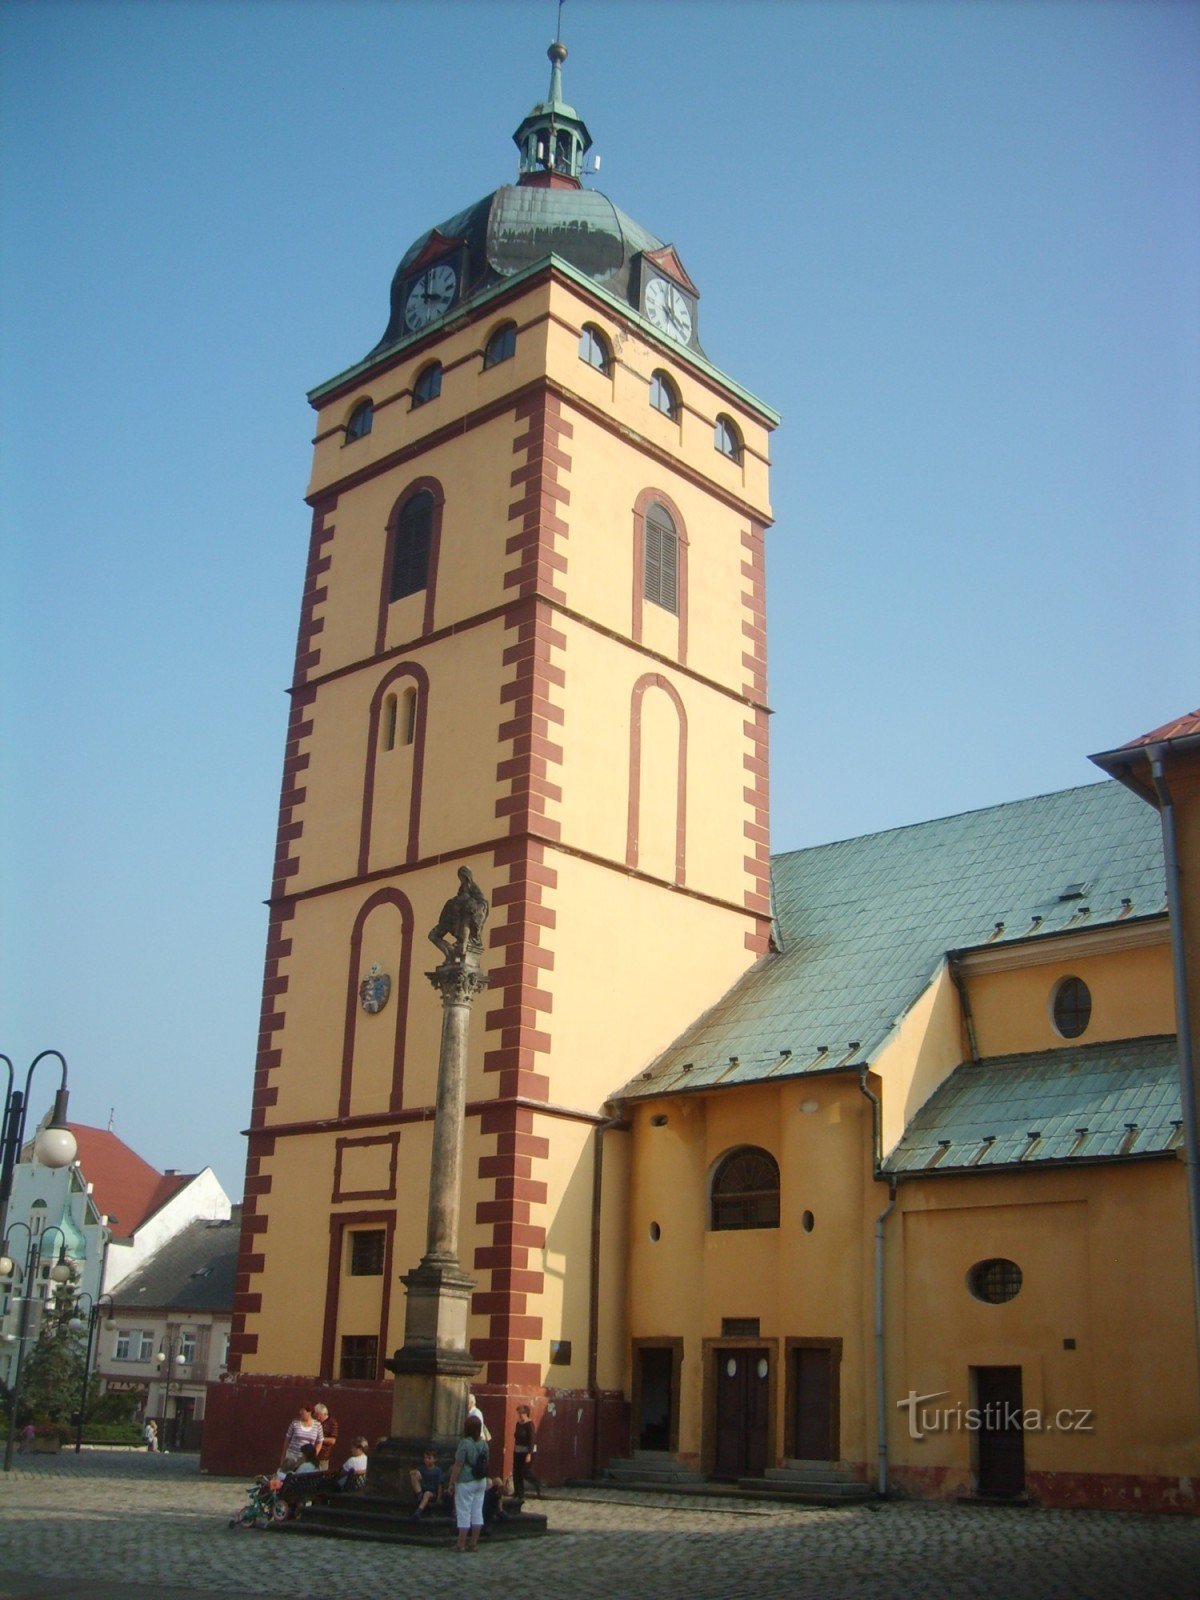 Wieża miejska w Jirkov